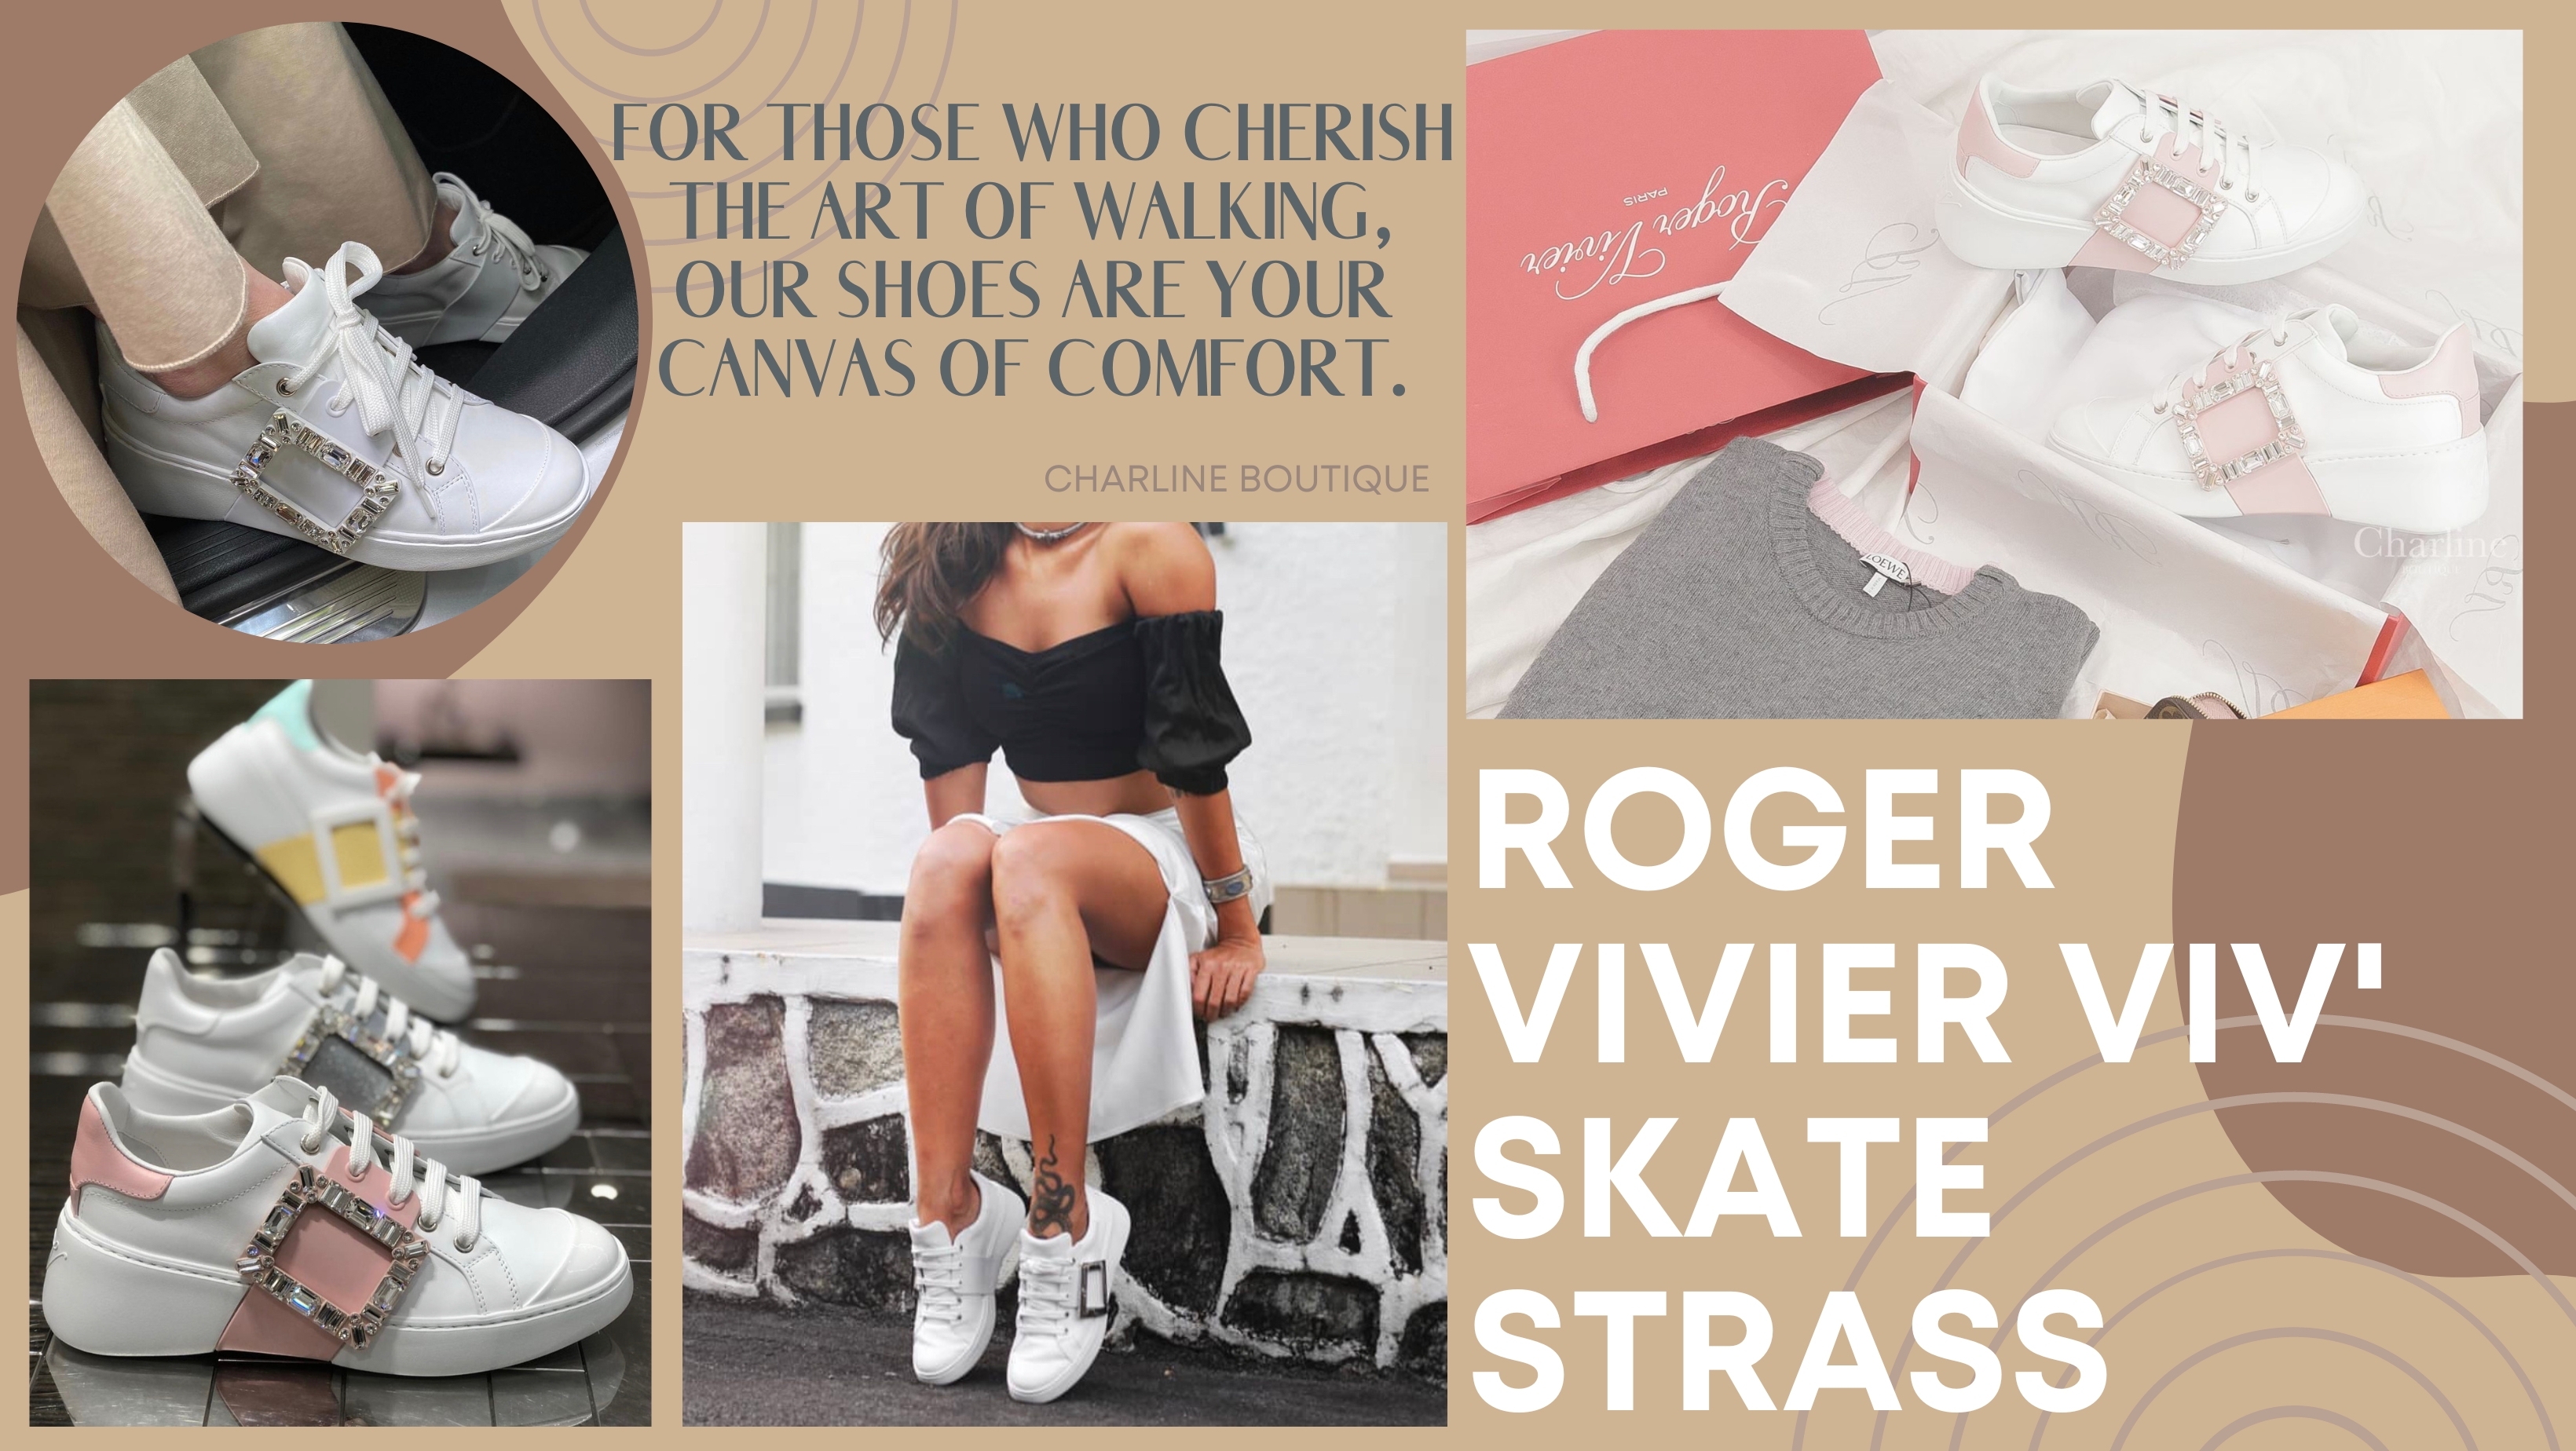 來聊聊Roger Vivier的Viv' Skate Sneaker，今年最夯的小白鞋之一！設計師Gherardo Felloni以70年代滑板文化為靈感，簡約的線條搭配皮革點綴，金屬方扣和水鑽釦增添華麗感，倍受矚目。何超蓮婚禮上穿著Vera Wang婚紗、Roger Vivier訂製鞋、Graff頭冠，搭配Dior高訂珠寶，光芒四射。Viv' Skate小白鞋不僅有出色的增高效果，輕柔小牛皮貼合腳型，側邊水鑽方扣引人注目，穿著舒適。